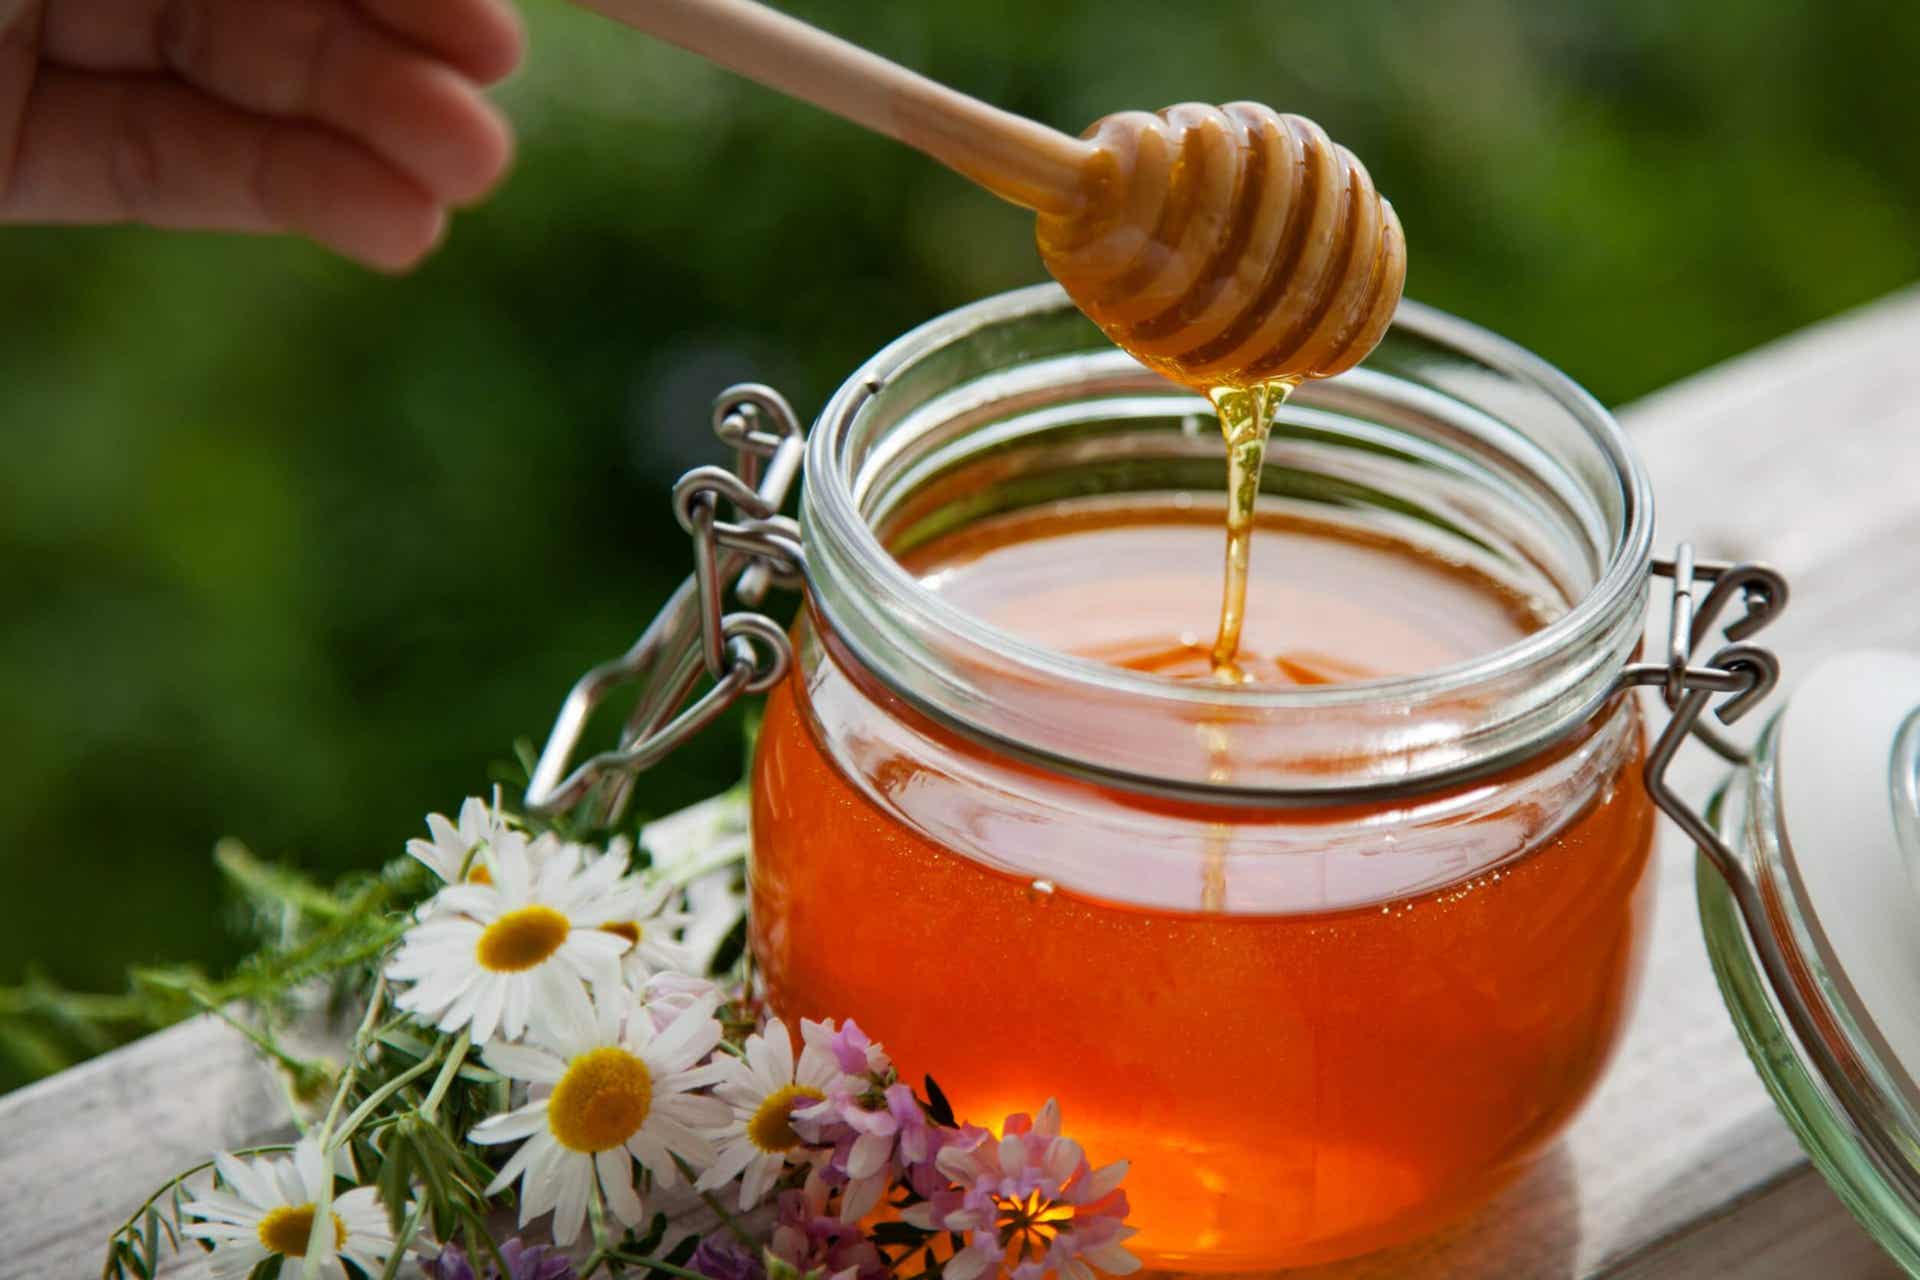 Un paciente con insuficiencia renal puede consumir miel de abejas